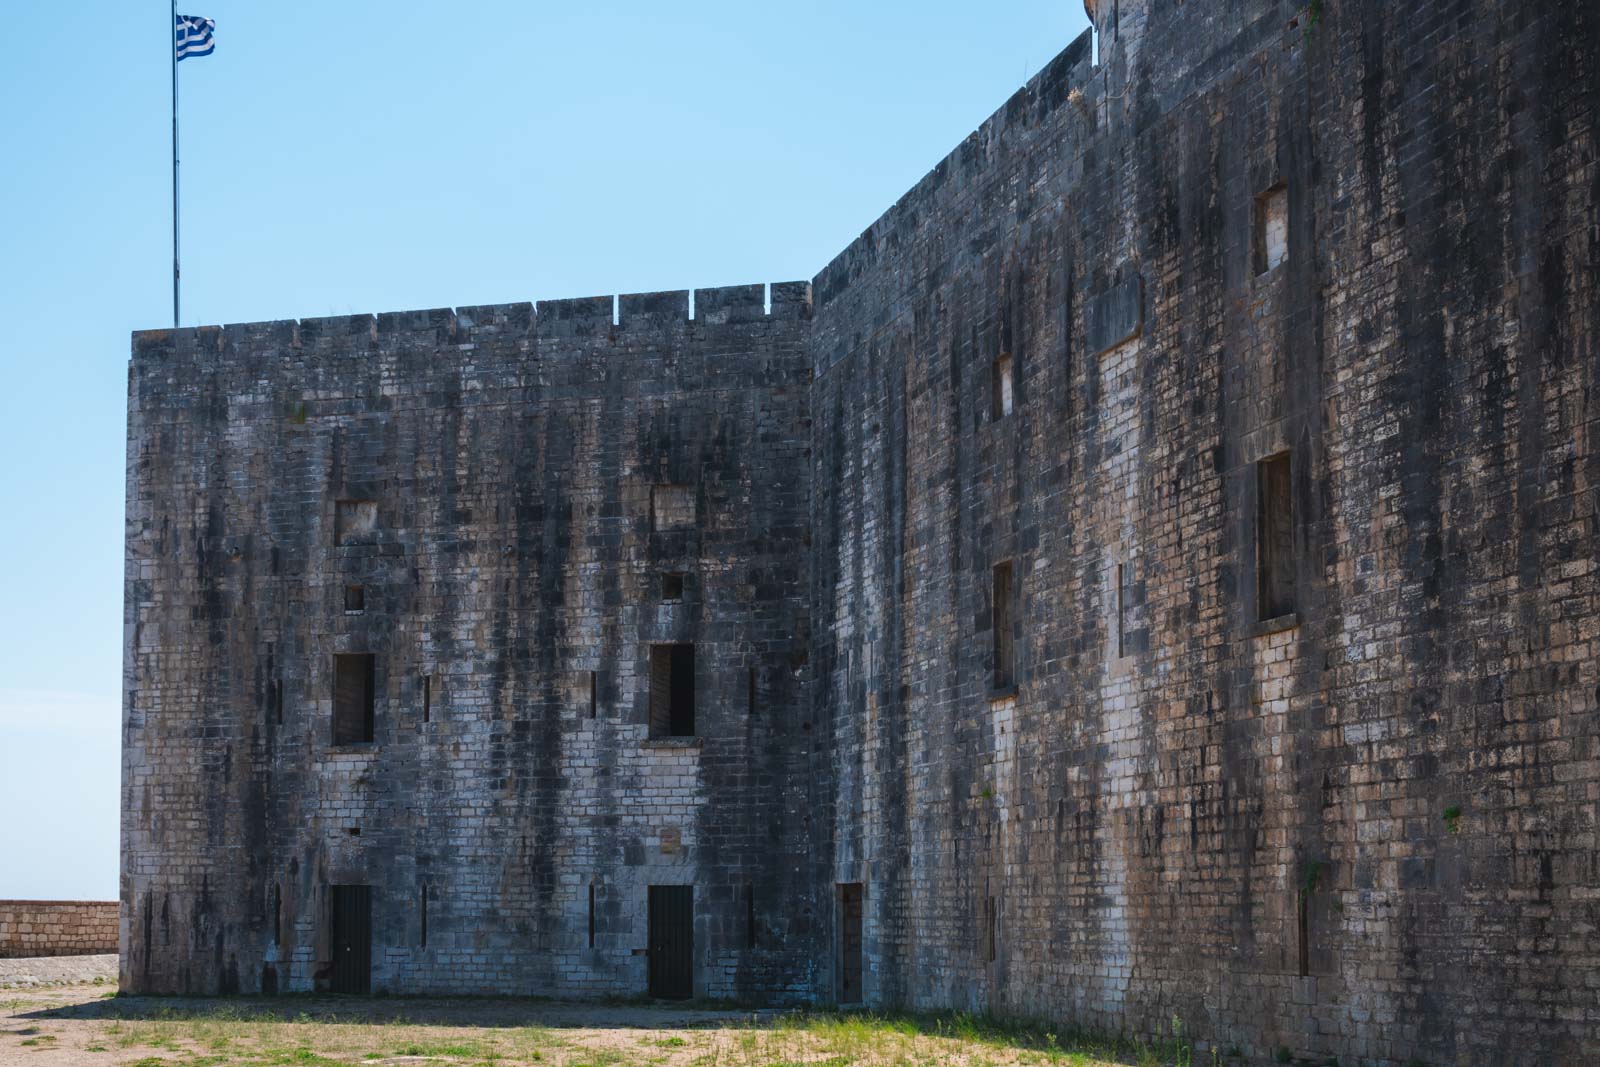 New Fortress of Corfu